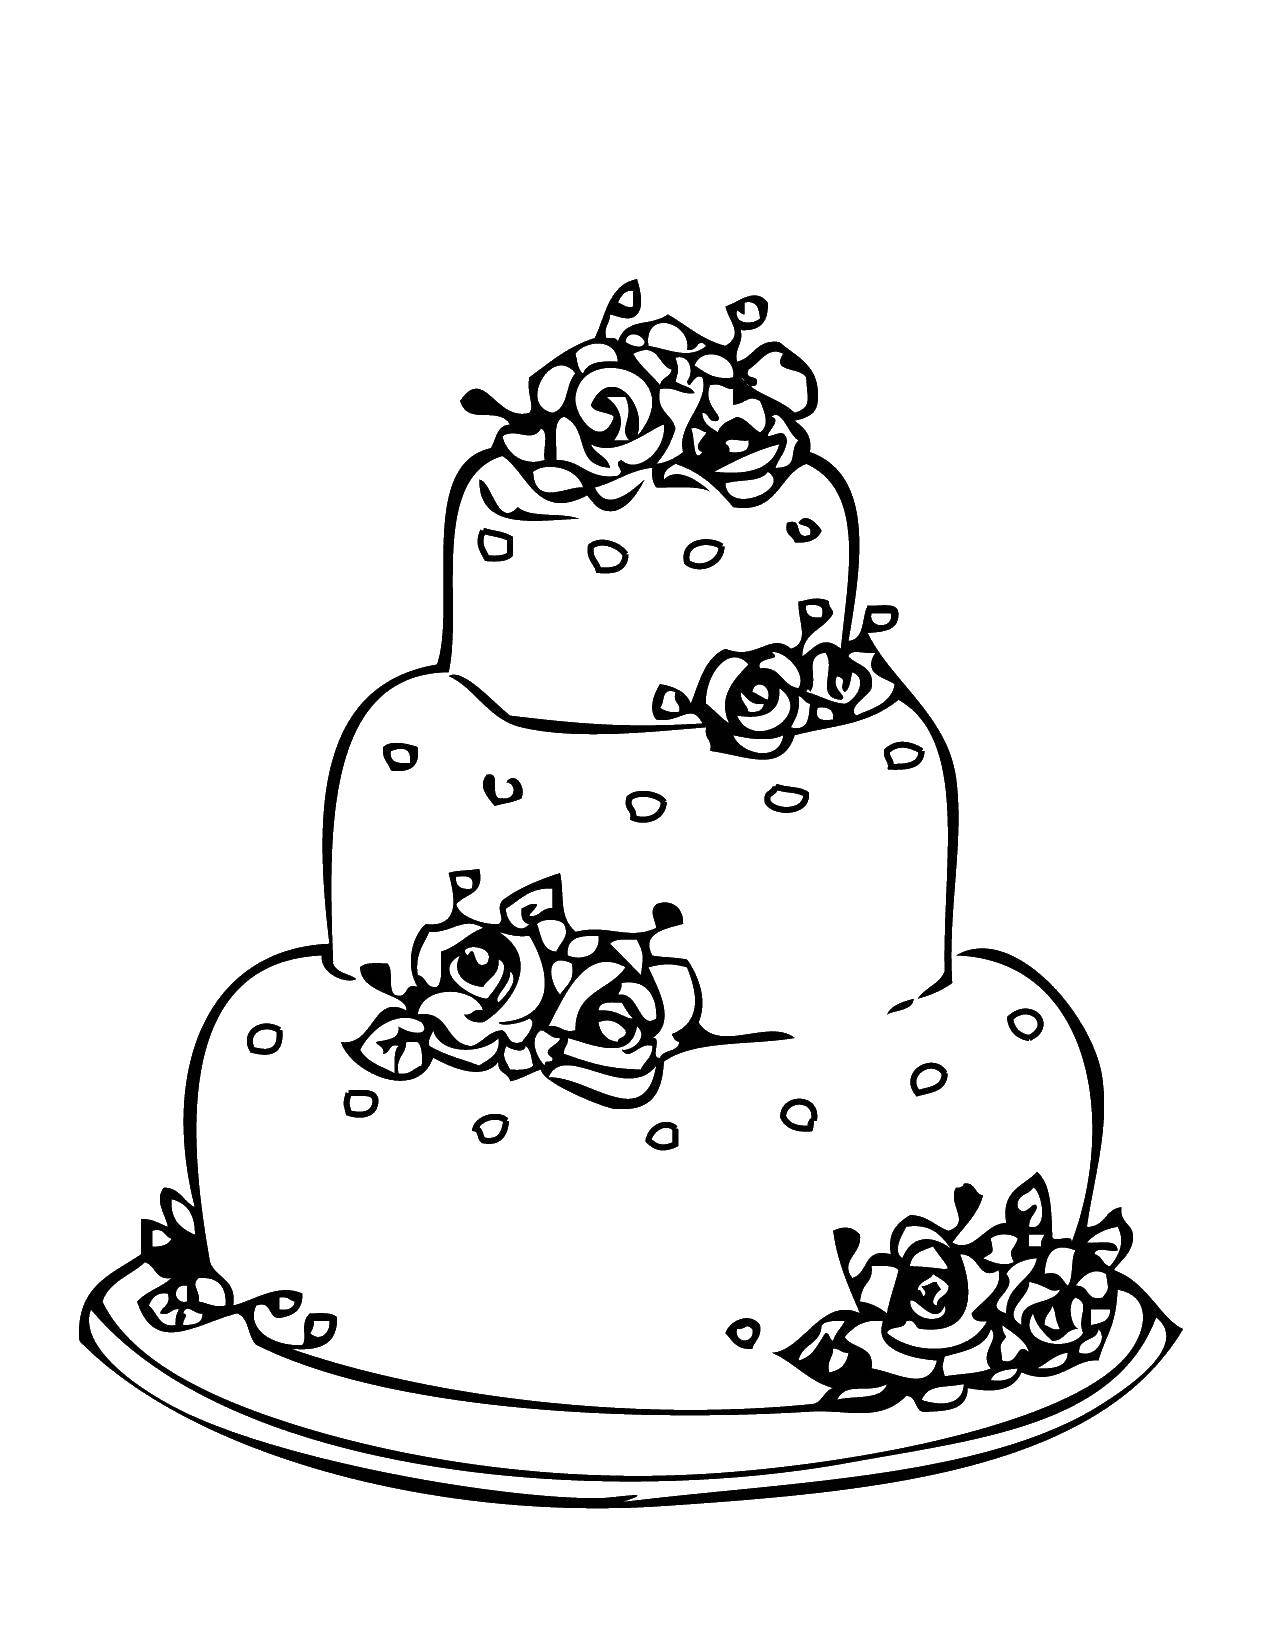 Название: Раскраска Свадебный тортик. Категория: Свадьба. Теги: свадьба, торт, тортик, цветы.